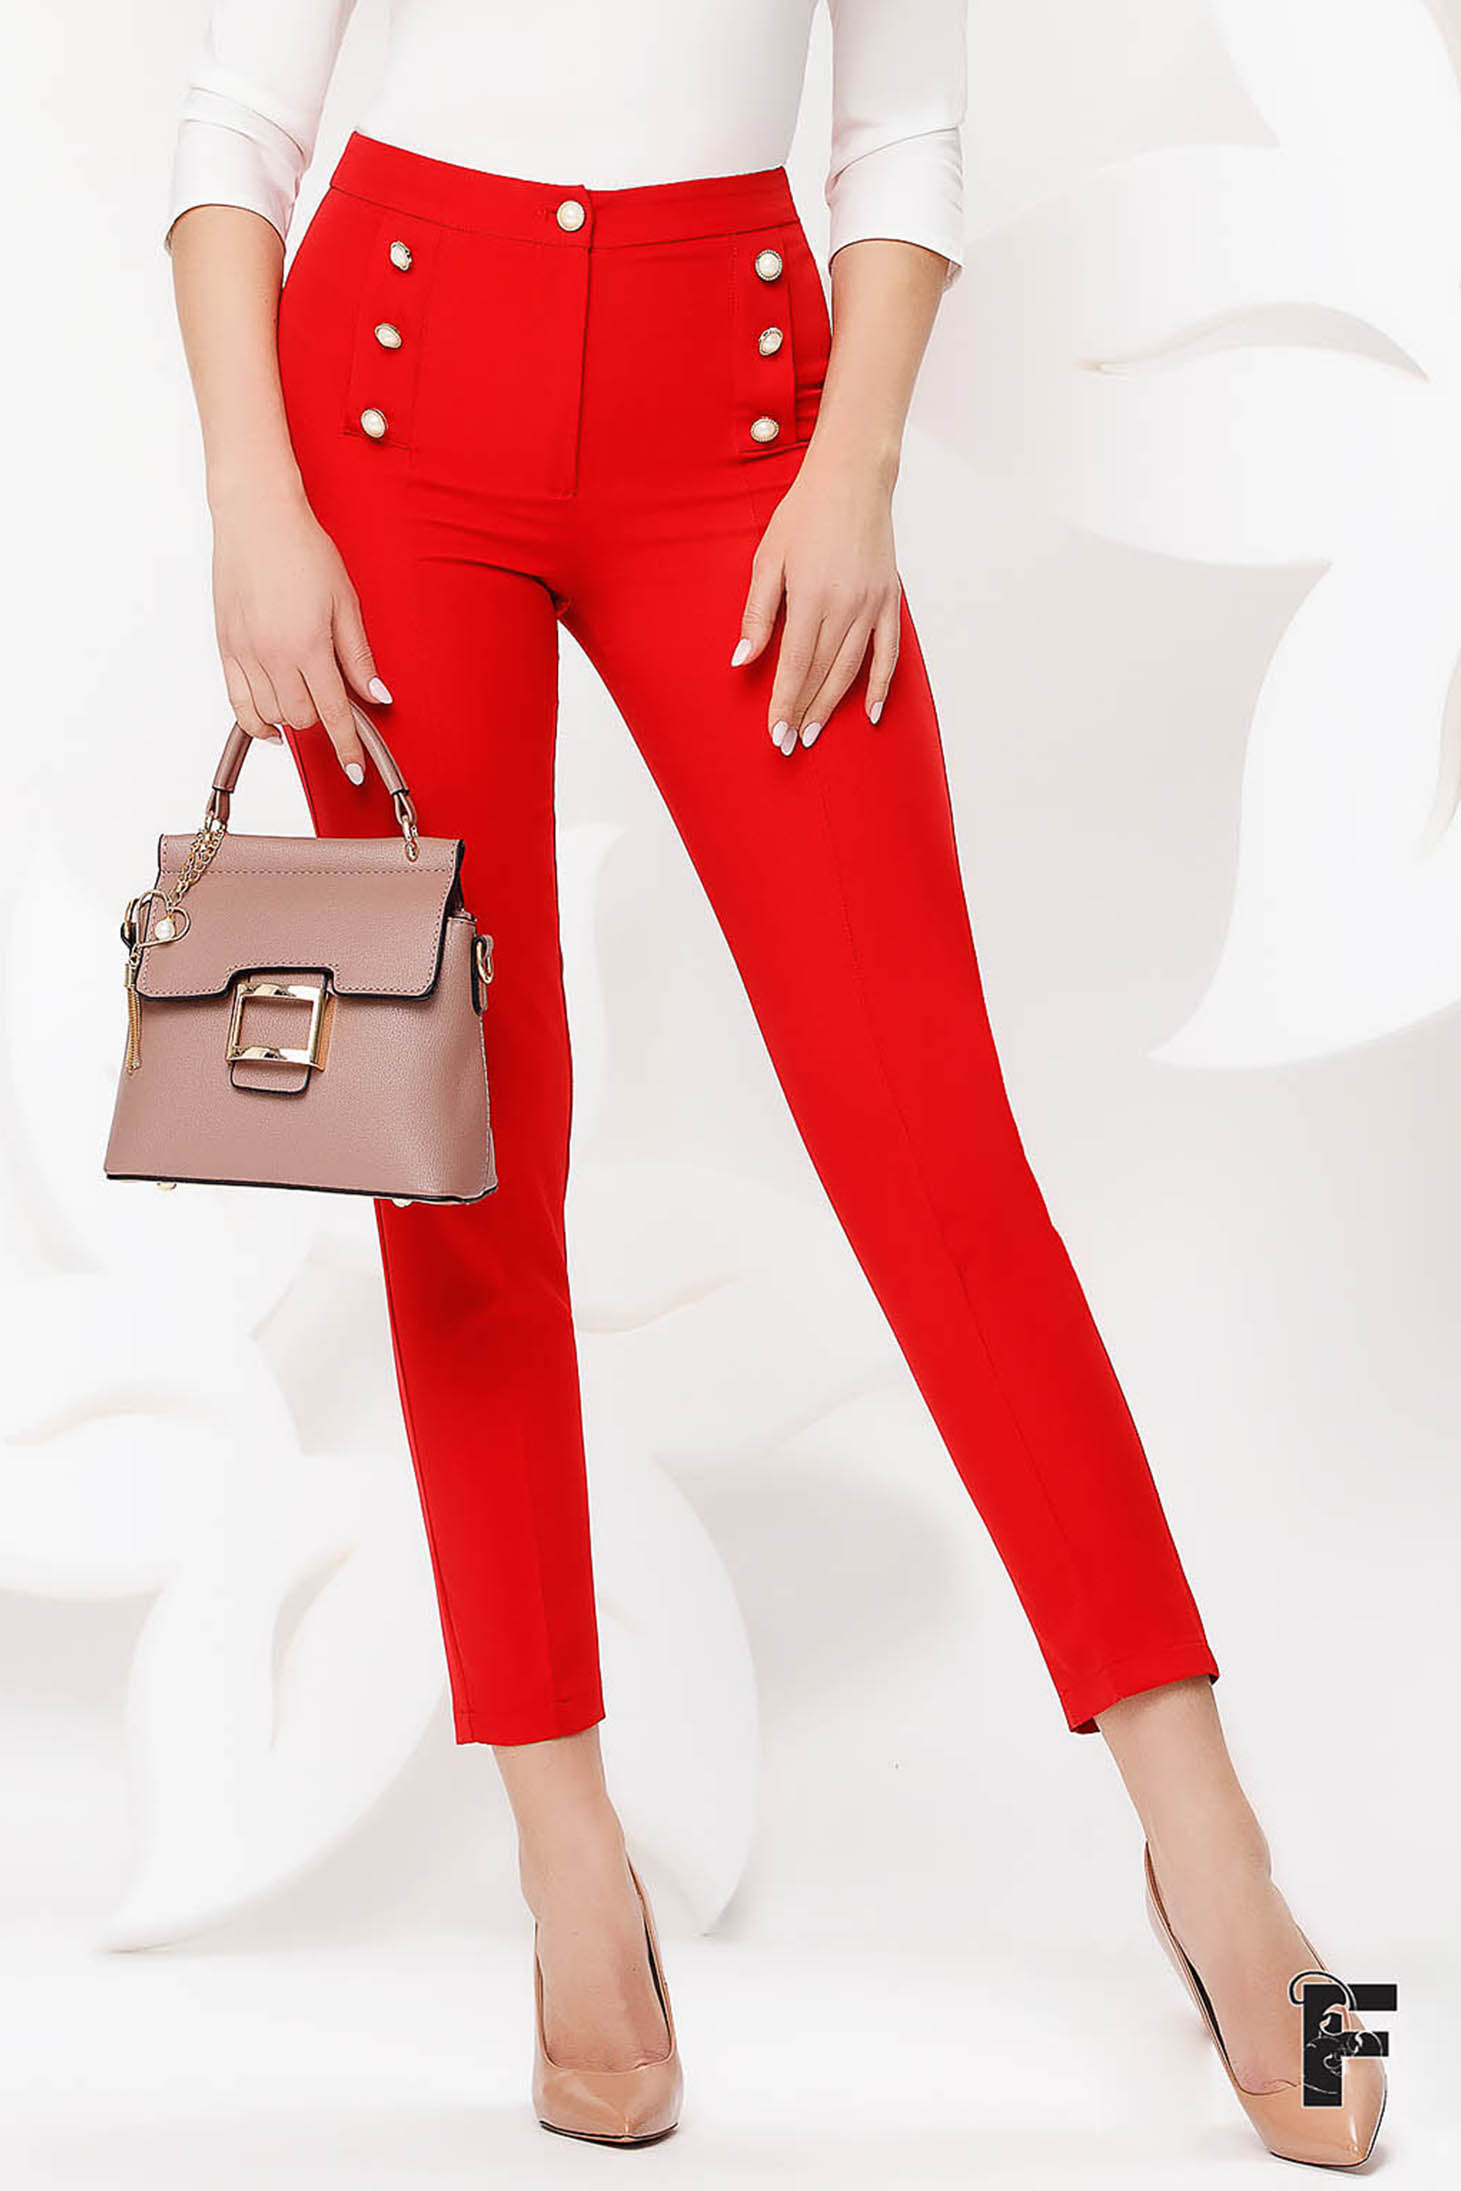 Pantaloni Fofy rosii office conici cu talie inalta din stofa usor elastica accesorizati cu nasturi